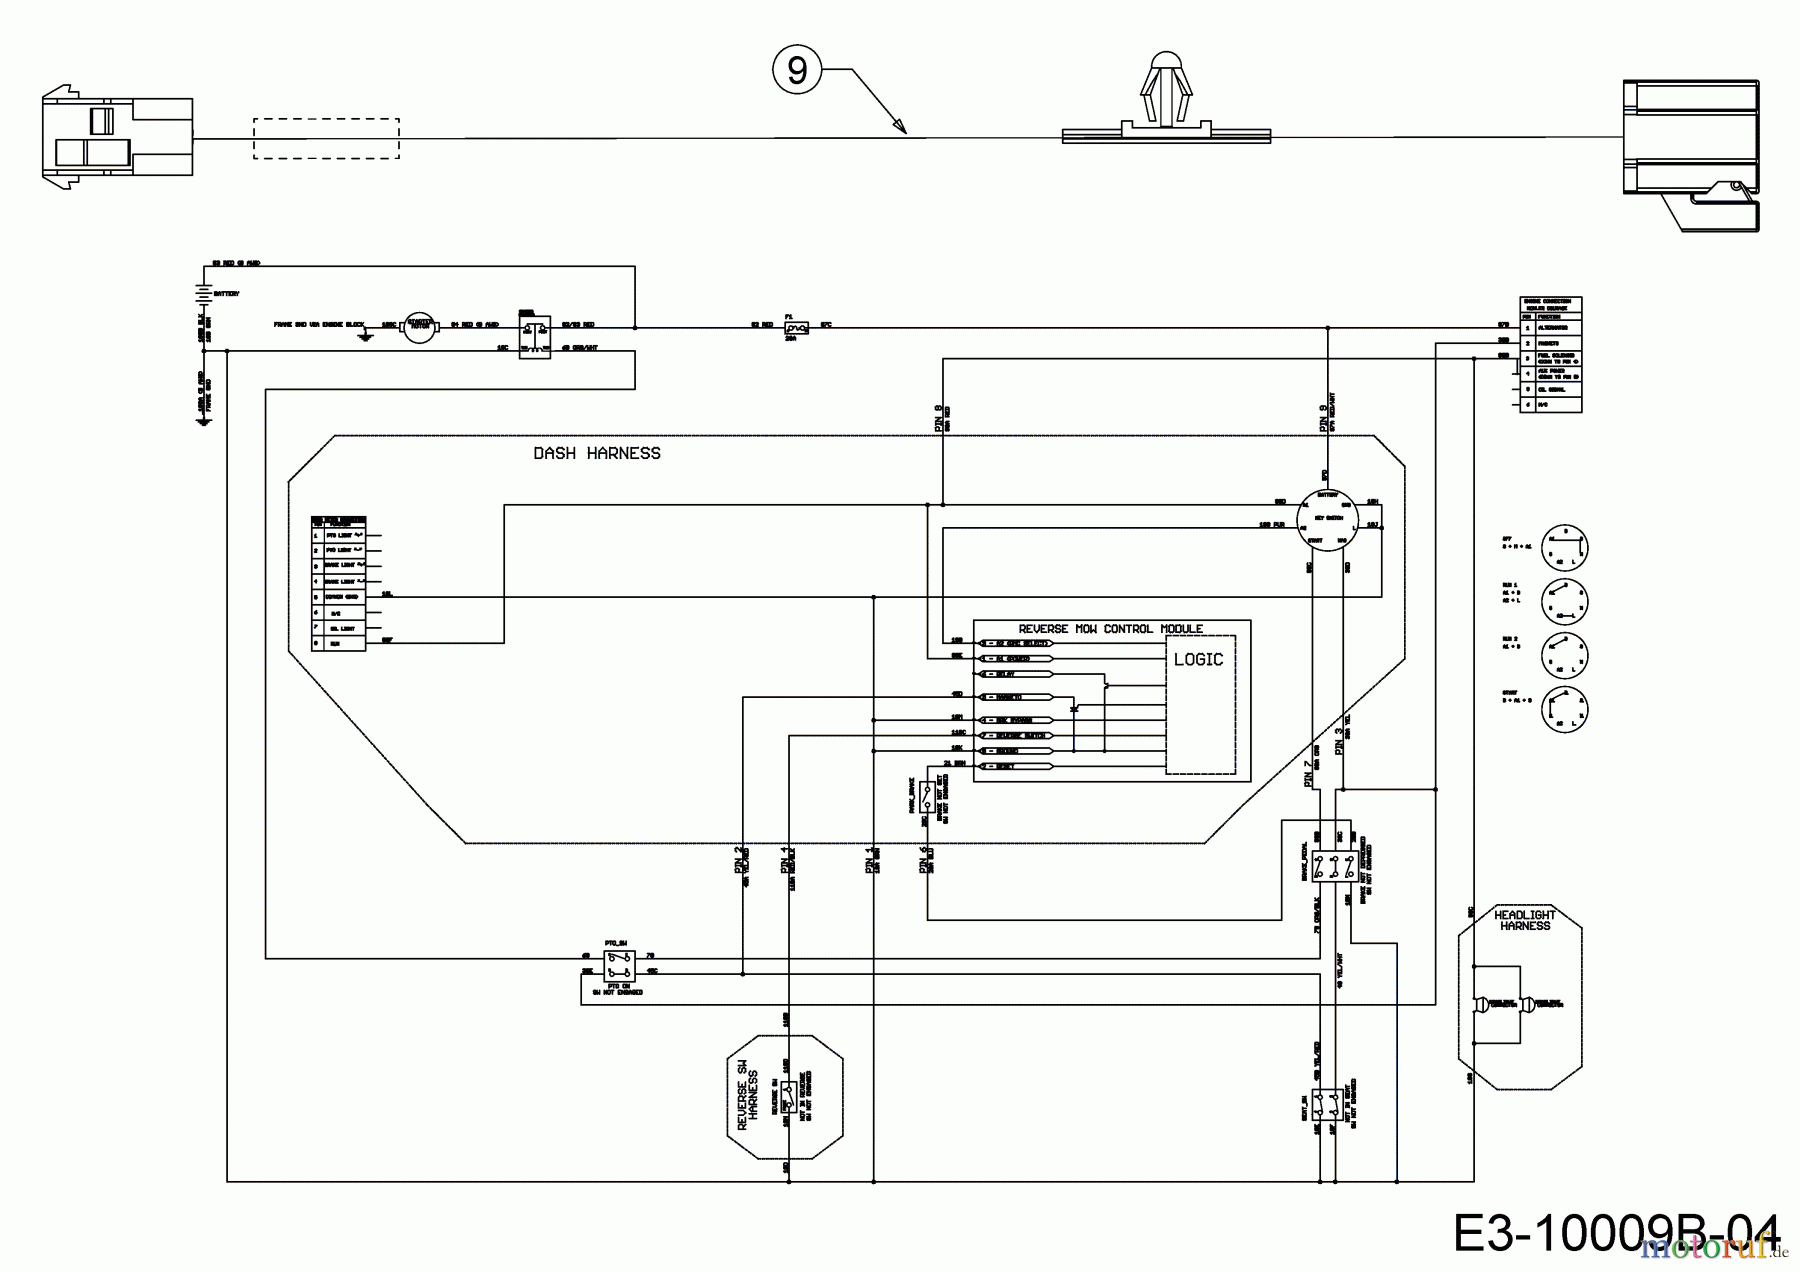  Cub Cadet Lawn tractors XT1 OS107 13A8A1CS603  (2020) Wiring diagram reverse